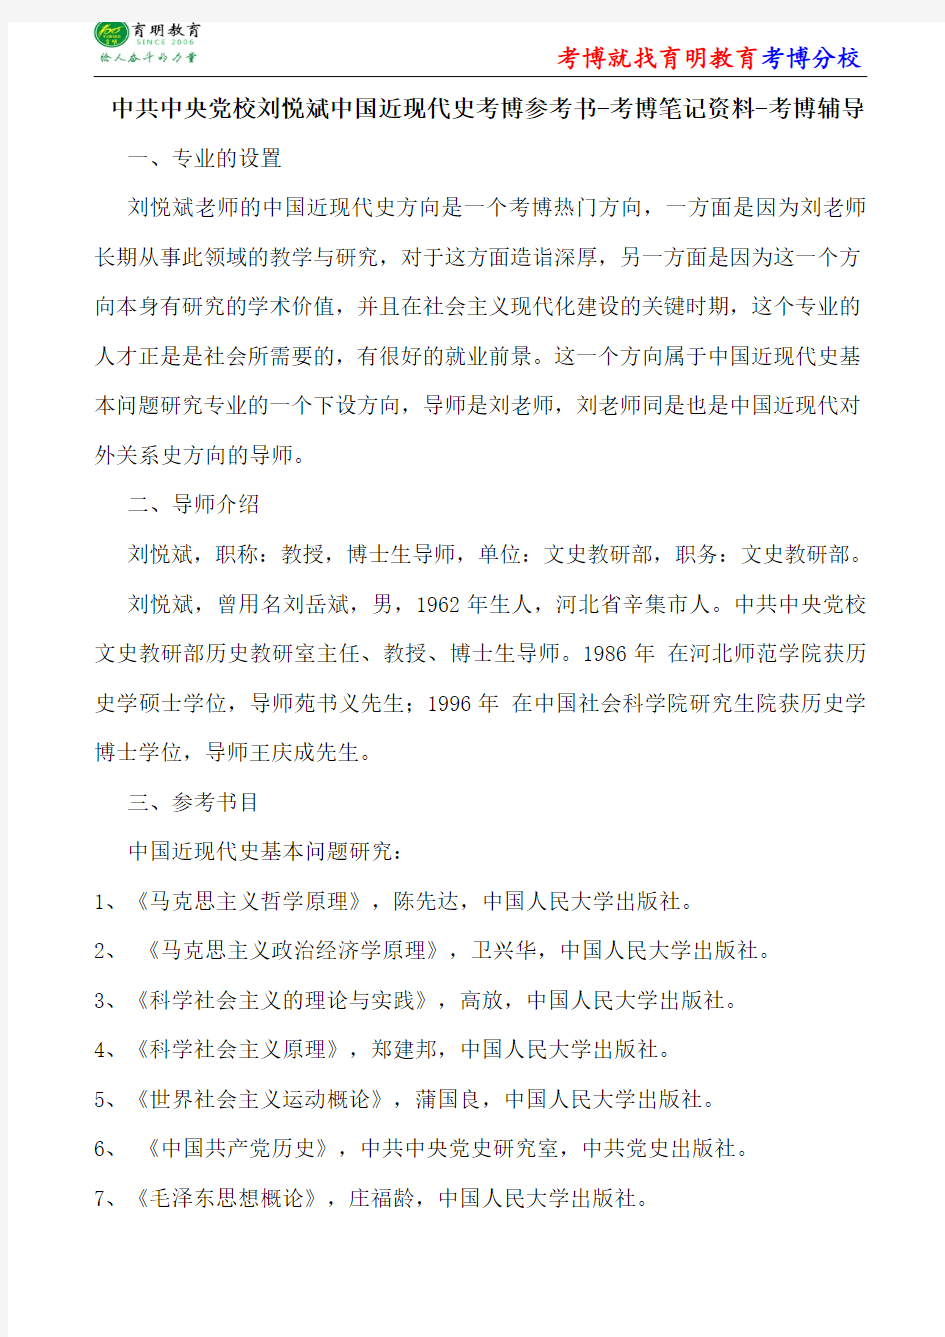 中共中央党校刘悦斌中国近现代史考博参考书-考博笔记资料-考博辅导